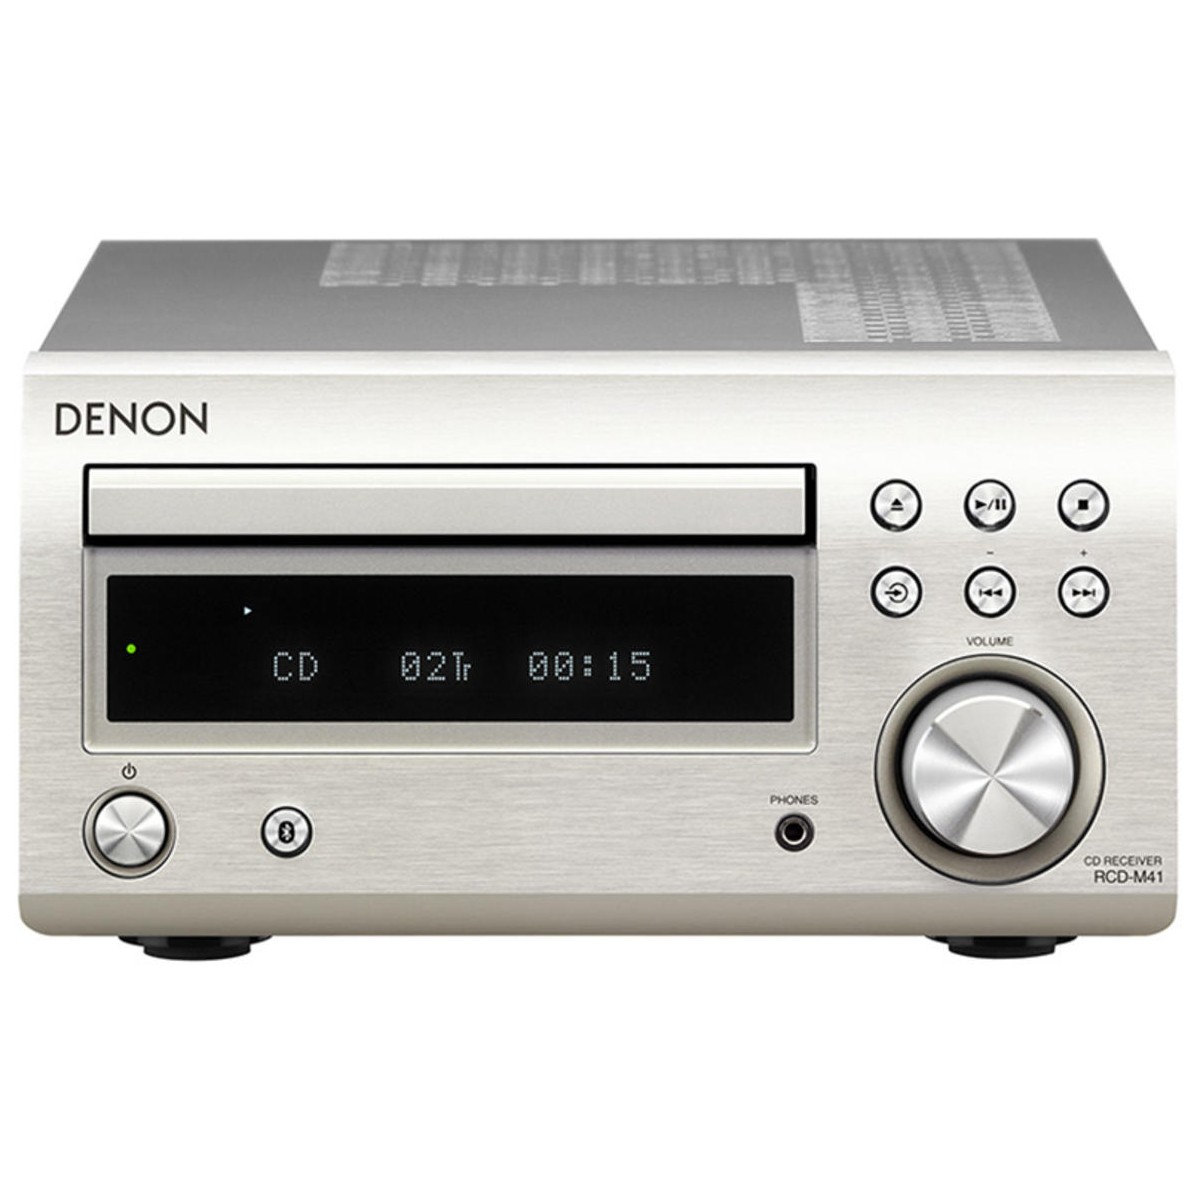 geweten Haast je lid DENON RCD-M41 Stereo versterker met CD